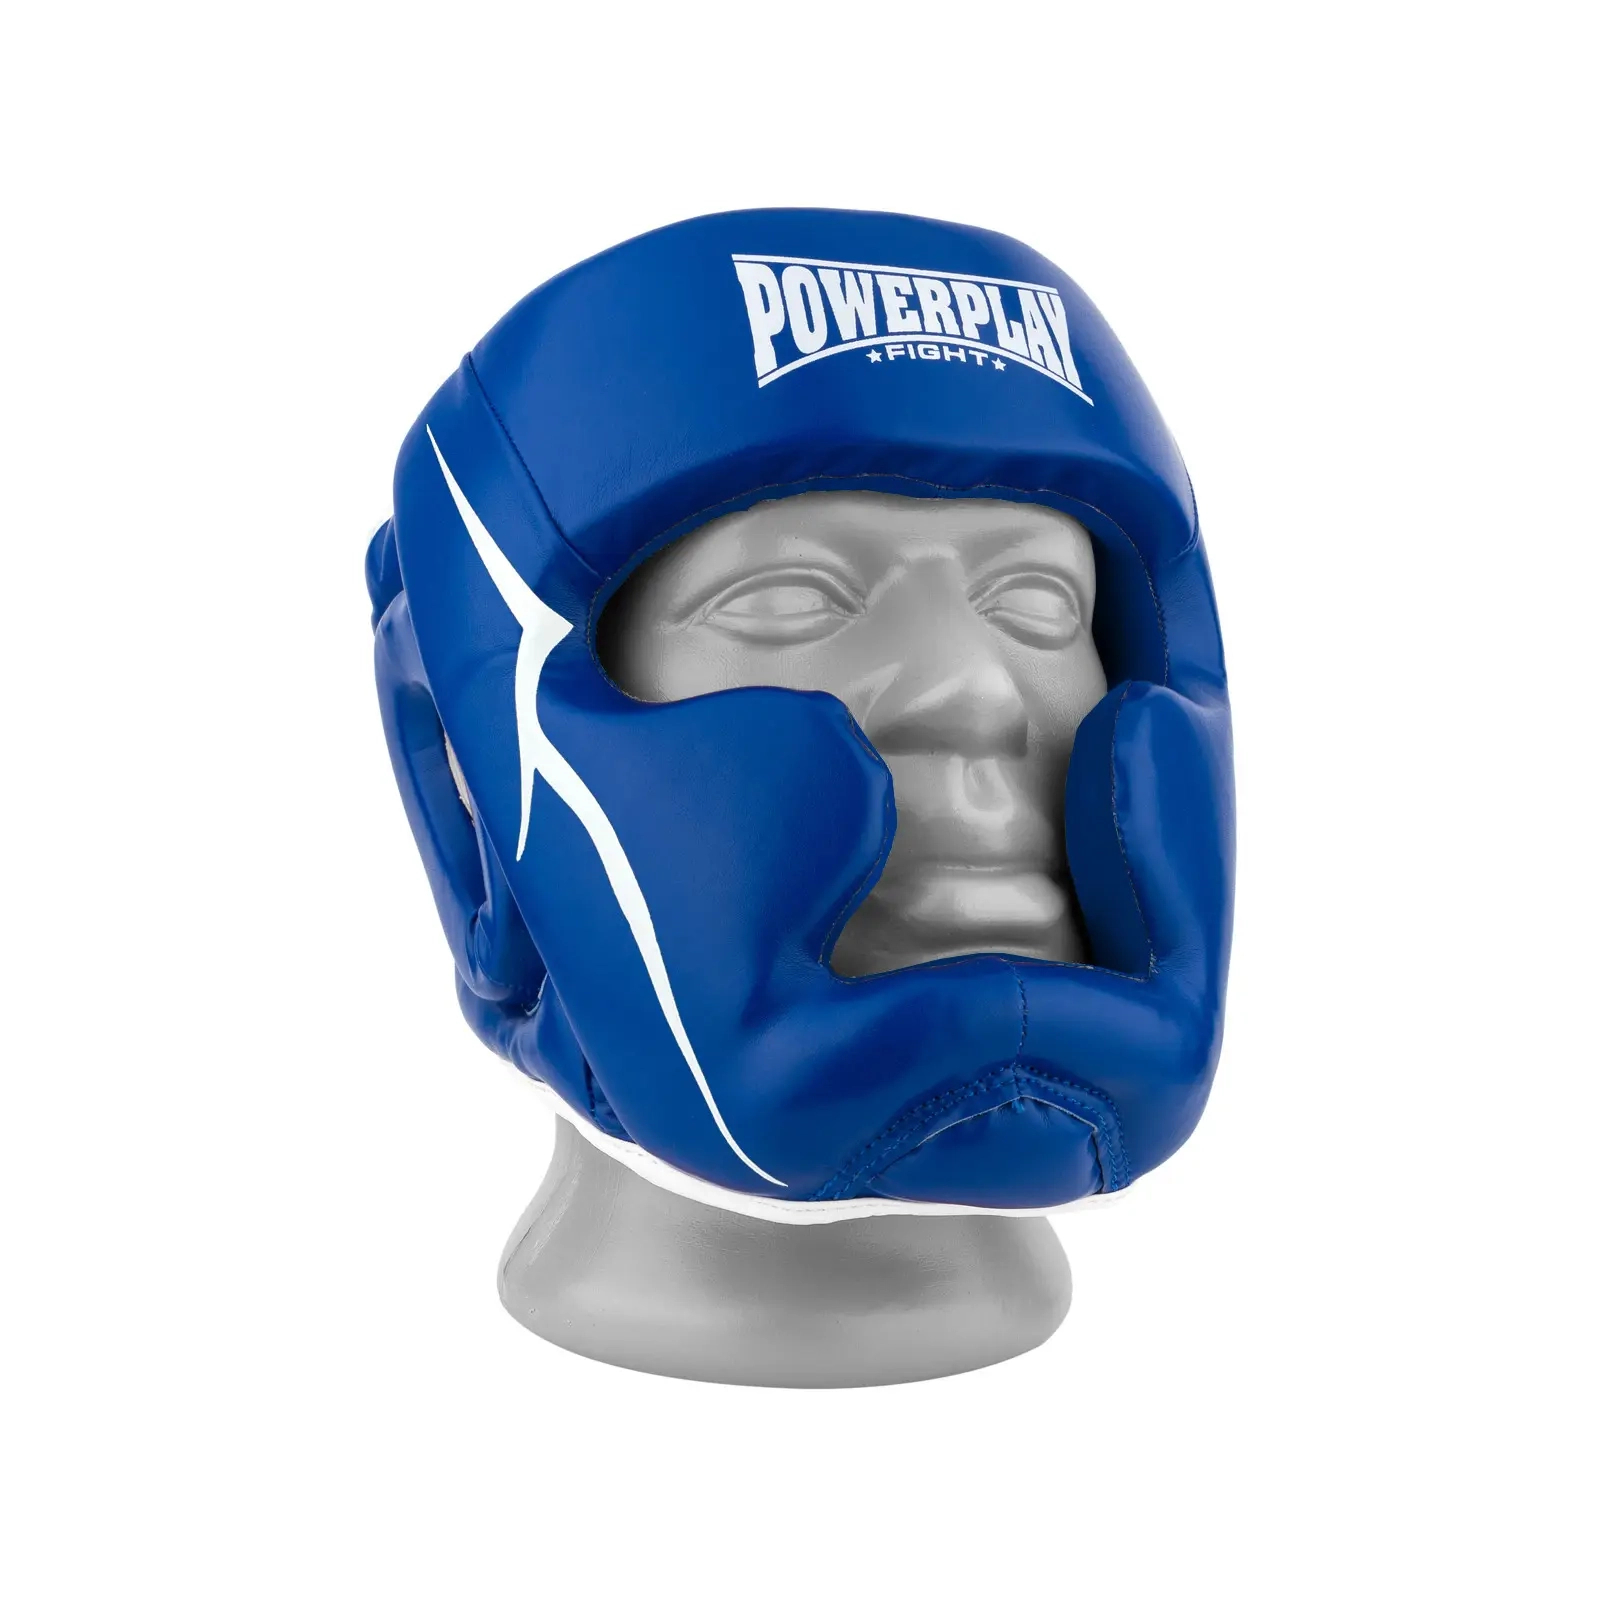 Боксерский шлем PowerPlay 3100 PU Червоний S (PP_3100_S_Red)